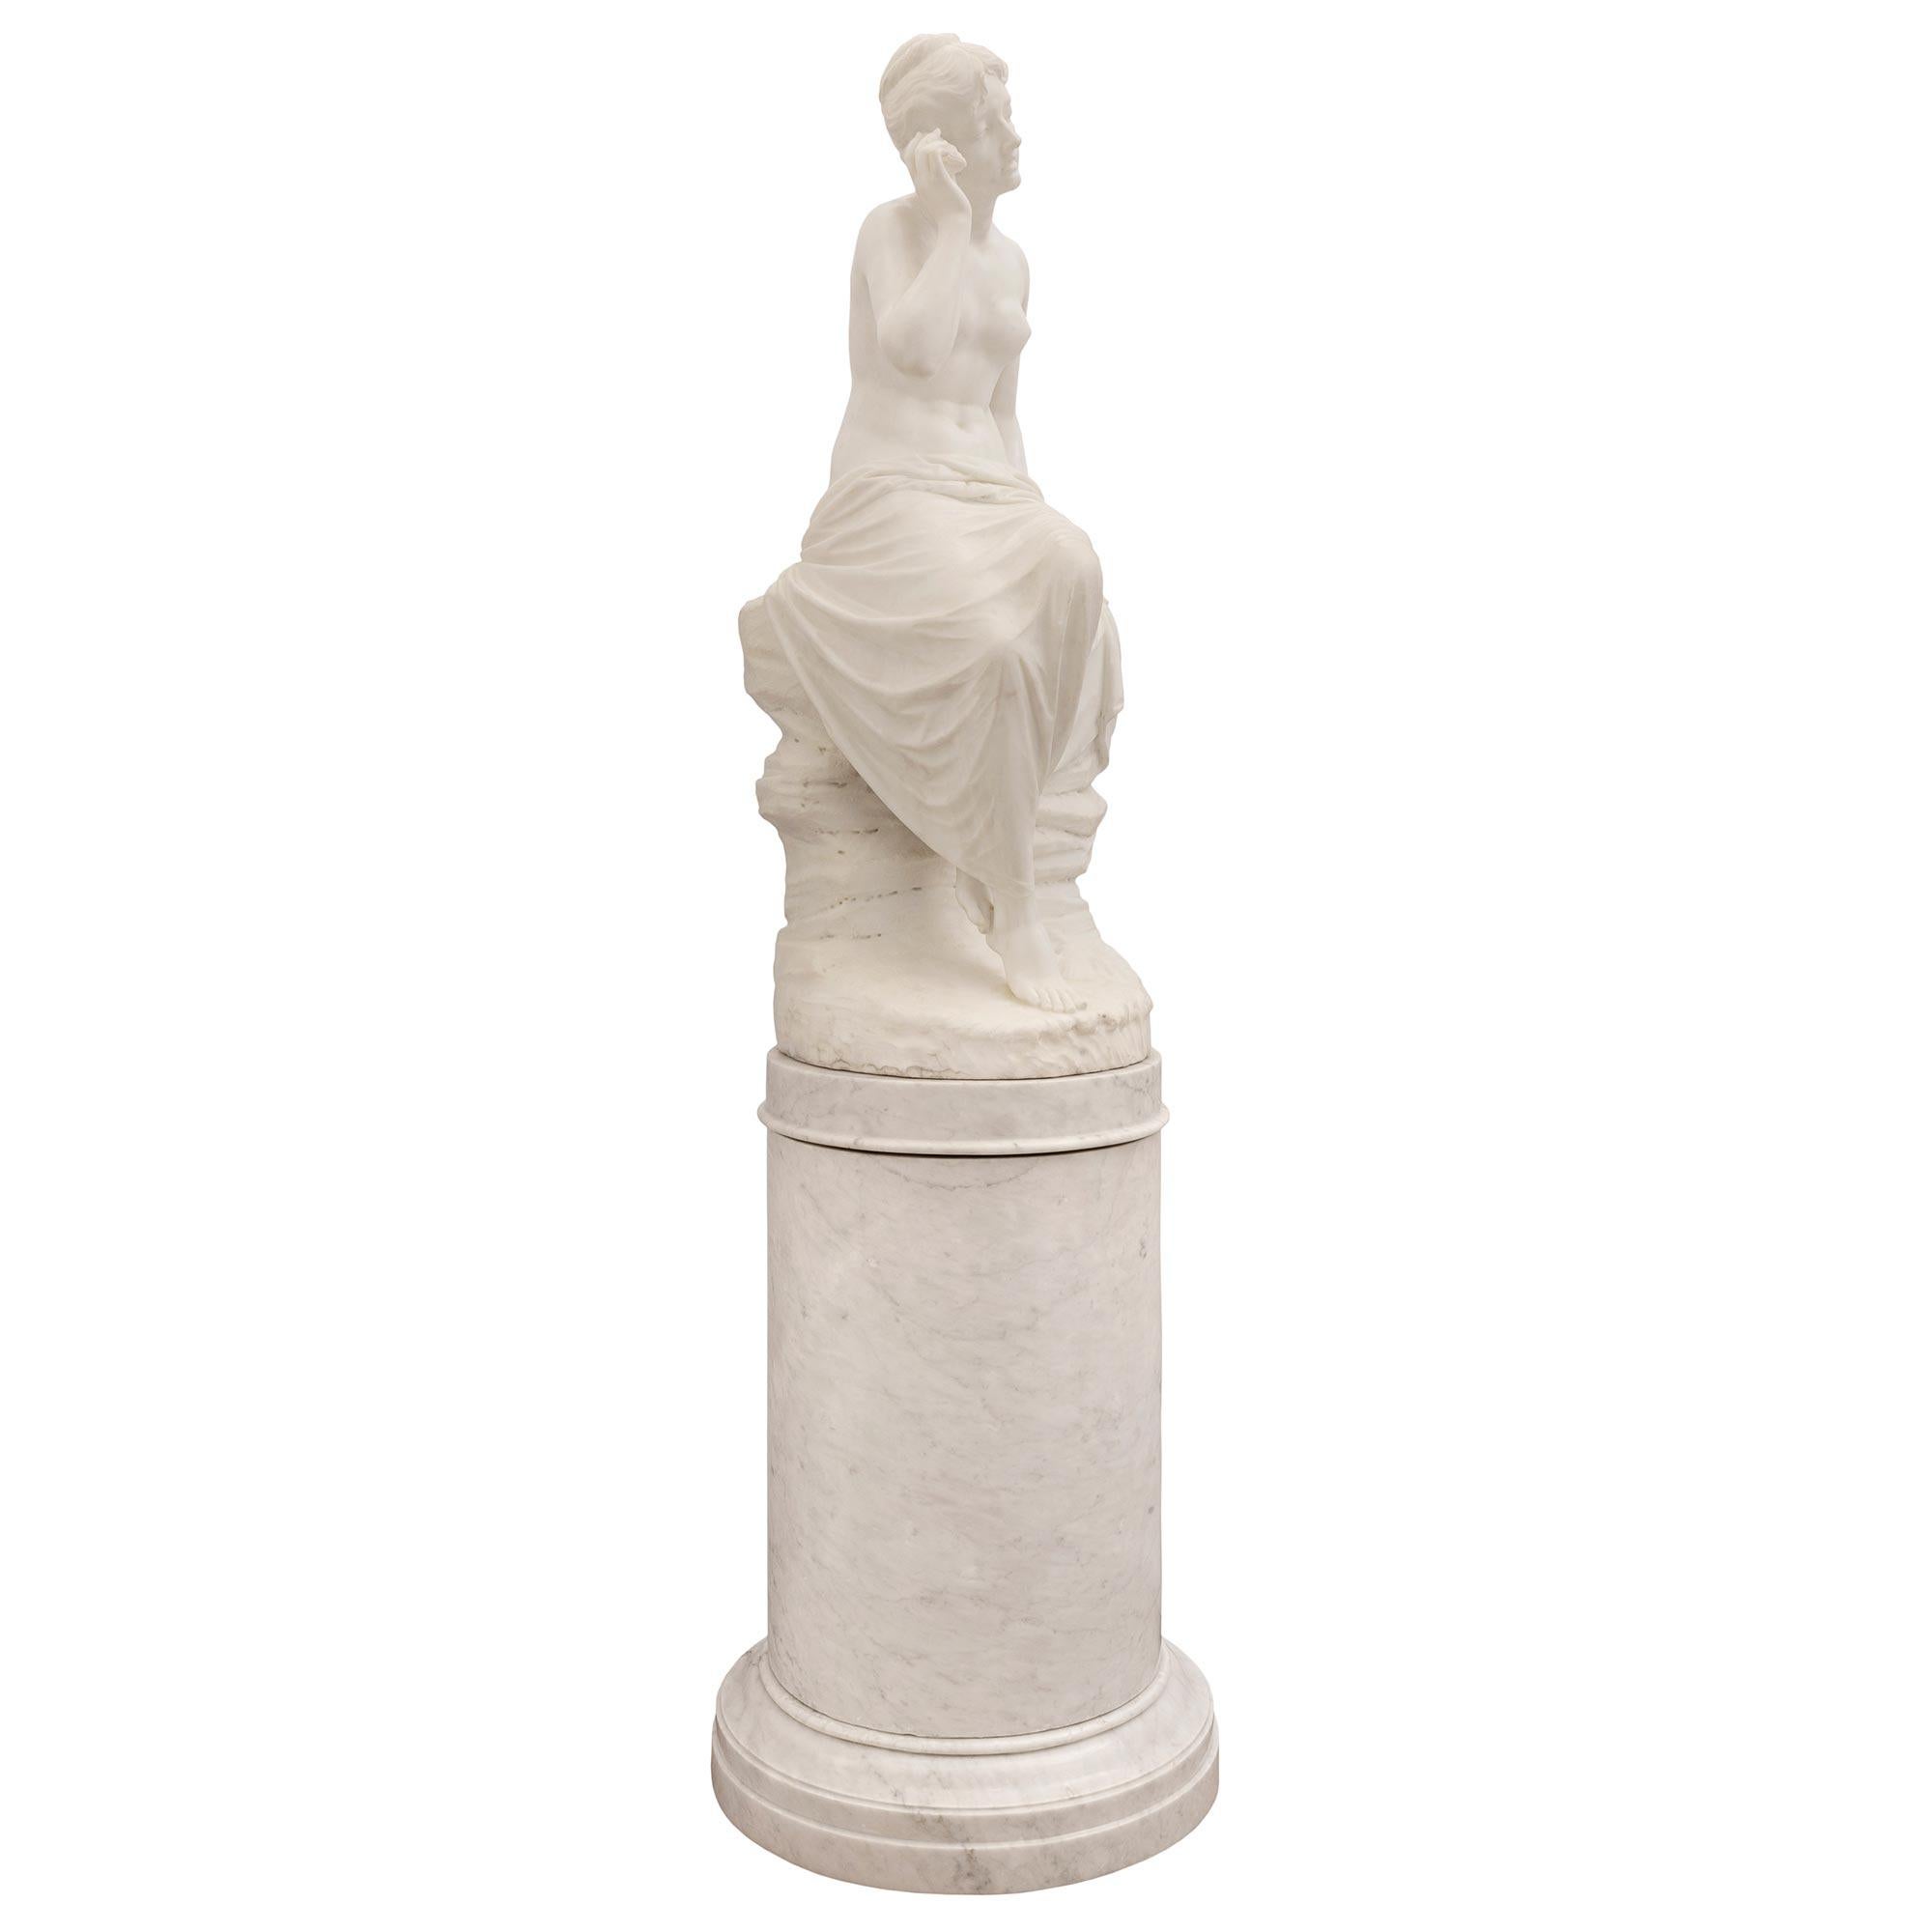 Superbe statue en marbre blanc de Carrare du XIXe siècle, de qualité musée, représentant une jeune fille avec un coquillage sur son piédestal d'origine. La statue est surélevée par sa colonne originale sur piédestal, avec un fin motif marbré à la